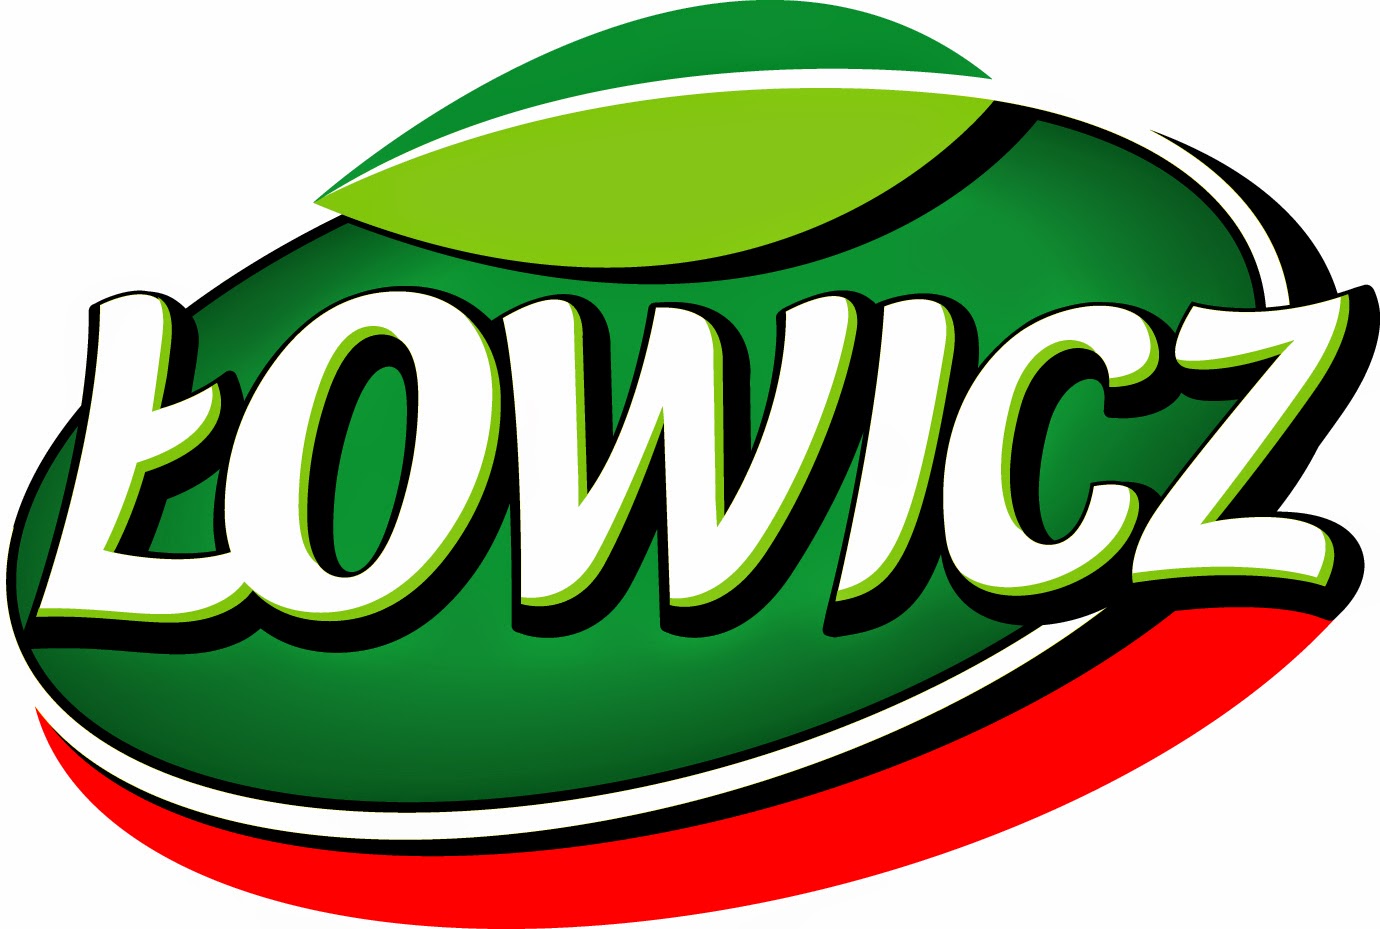 lowicz-logo